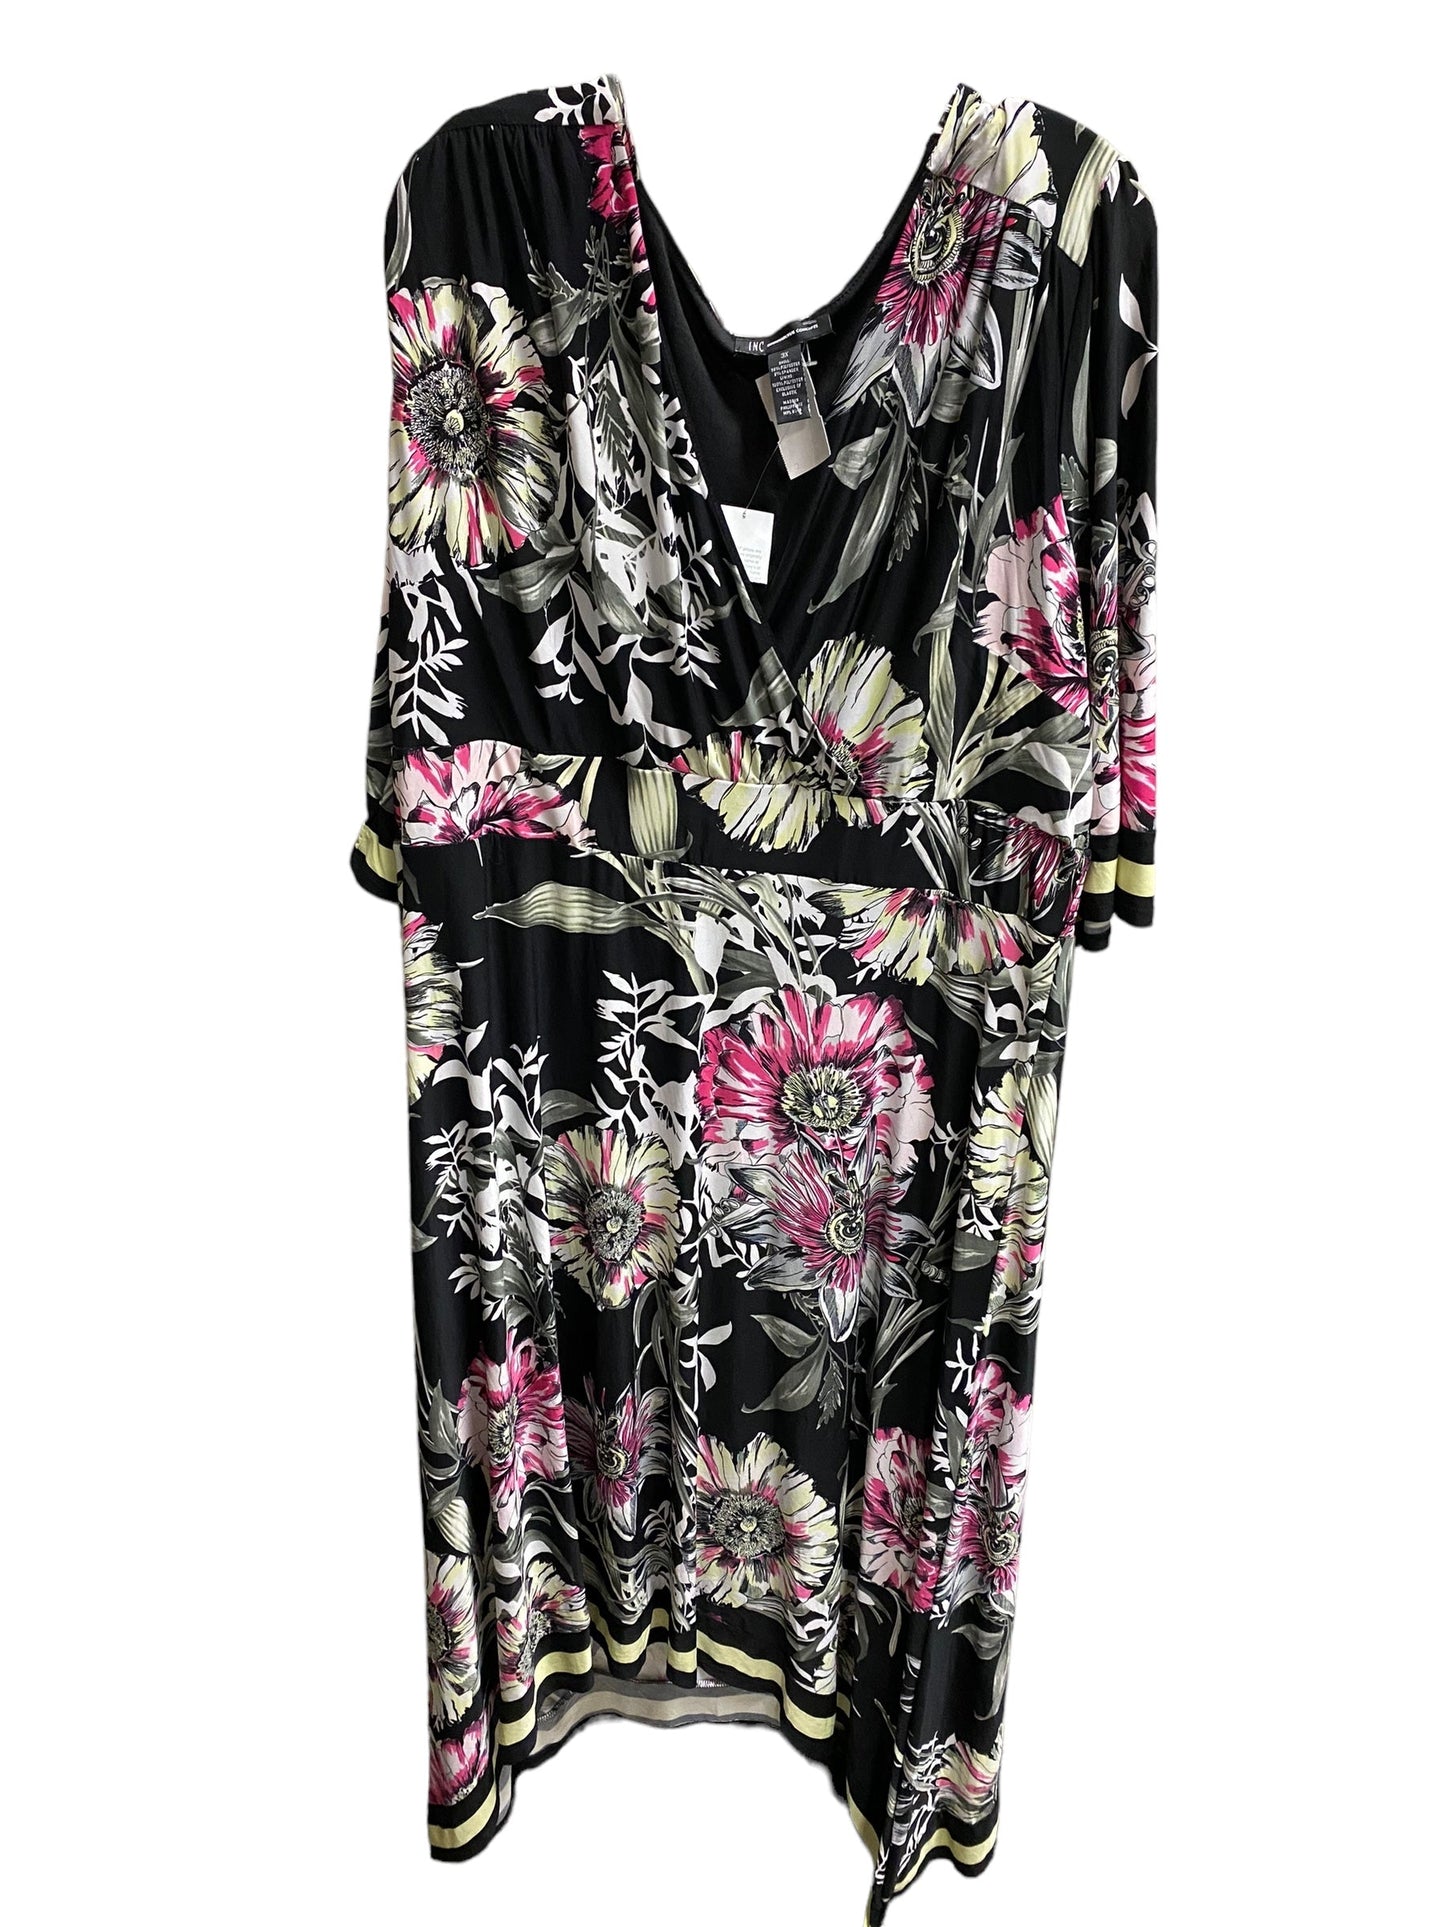 Floral Print Dress Casual Midi Inc, Size 3x